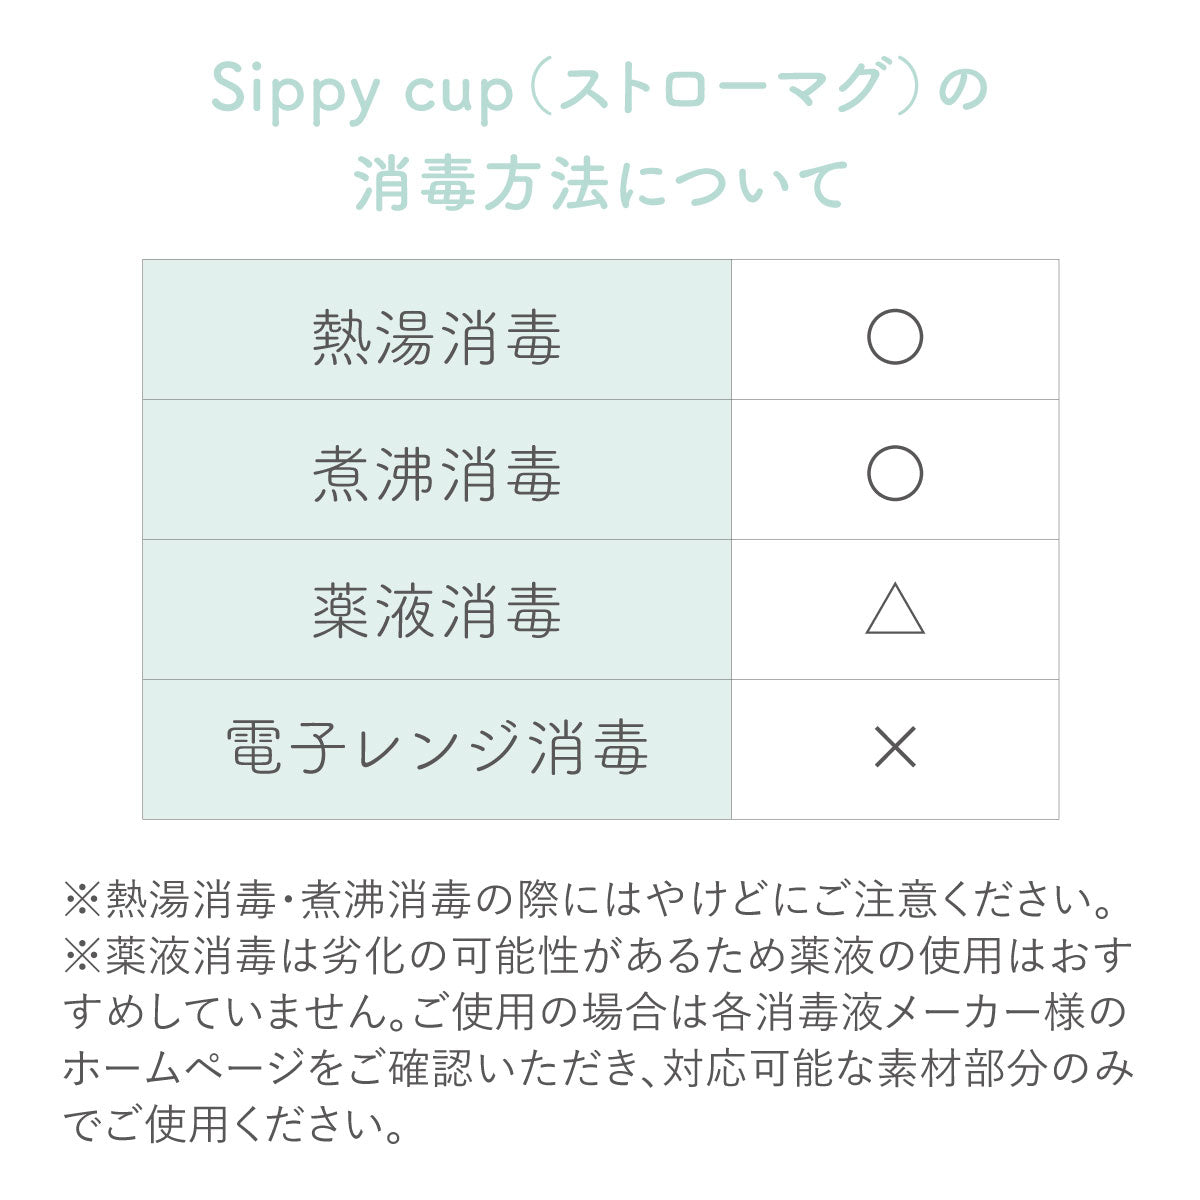 シッピーカップの消毒方法について一覧表